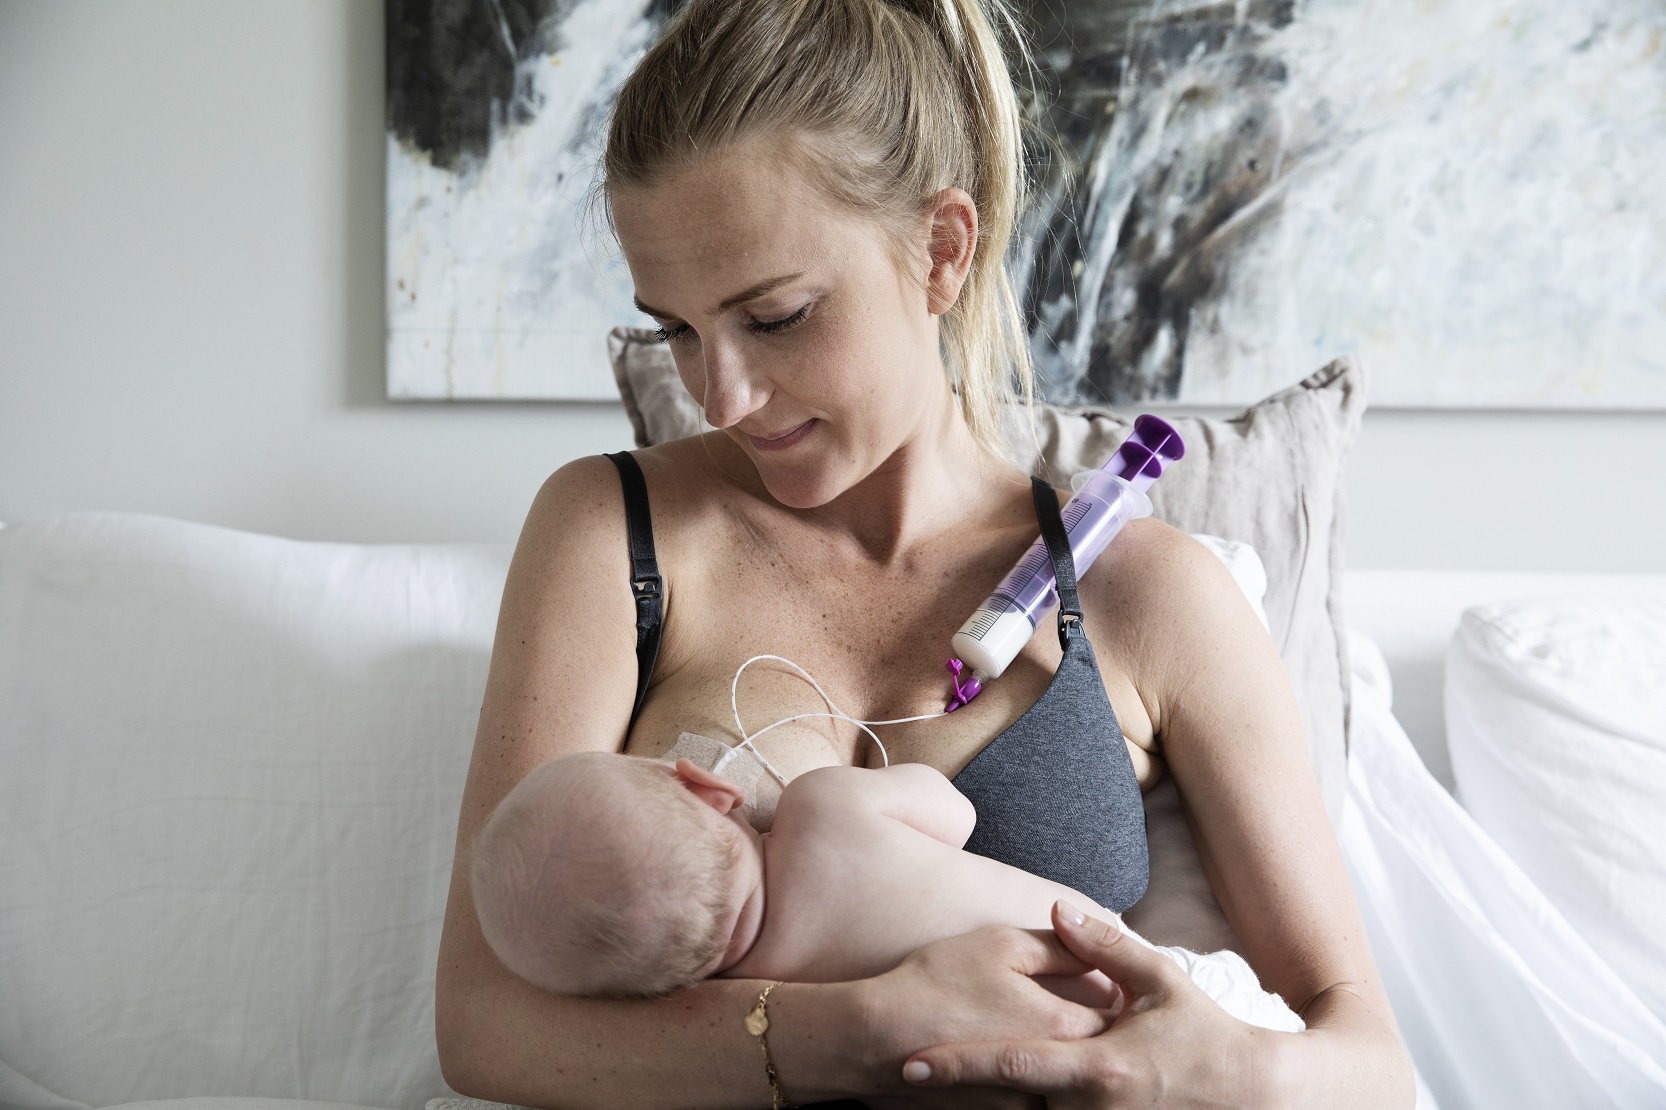 Mamma sitter med bebis i famnen. Bebisen får bröstmjölk genom en sondspruta som är fäst på bröstet.